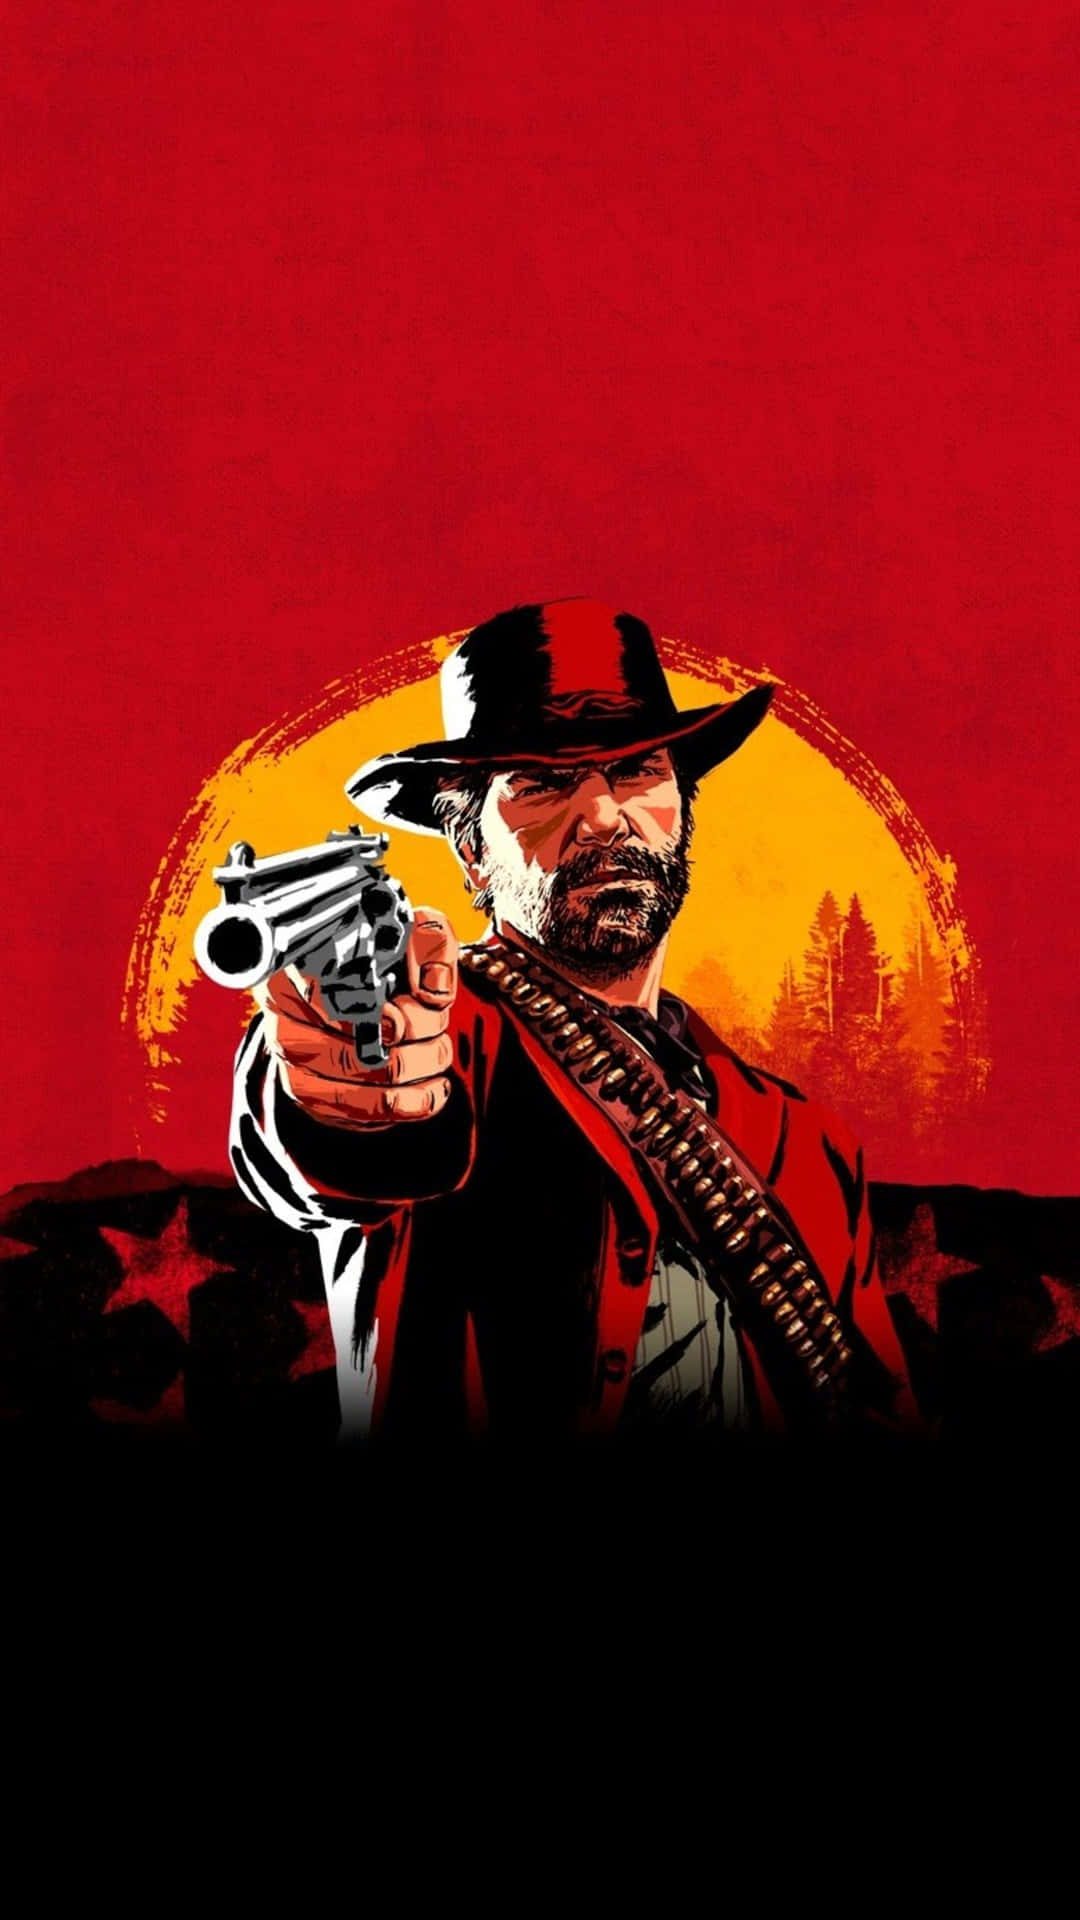 Tag på et vildt vestligt eventyr med Red Dead Redemption 4k Wallpaper. Wallpaper